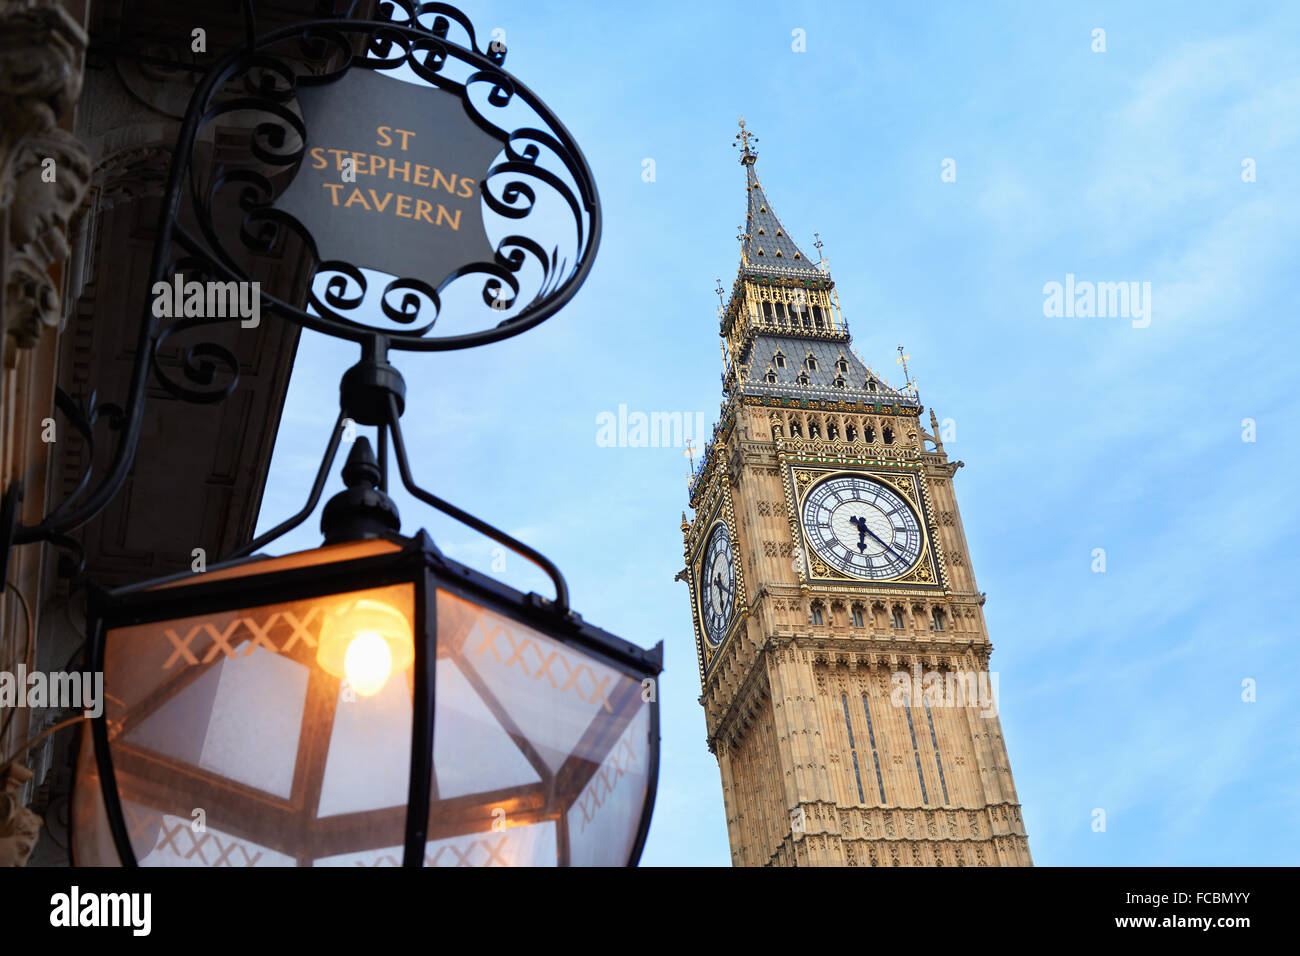 Big Ben et le vieux St Stephen's Tavern lampe, ciel bleu à Londres Banque D'Images